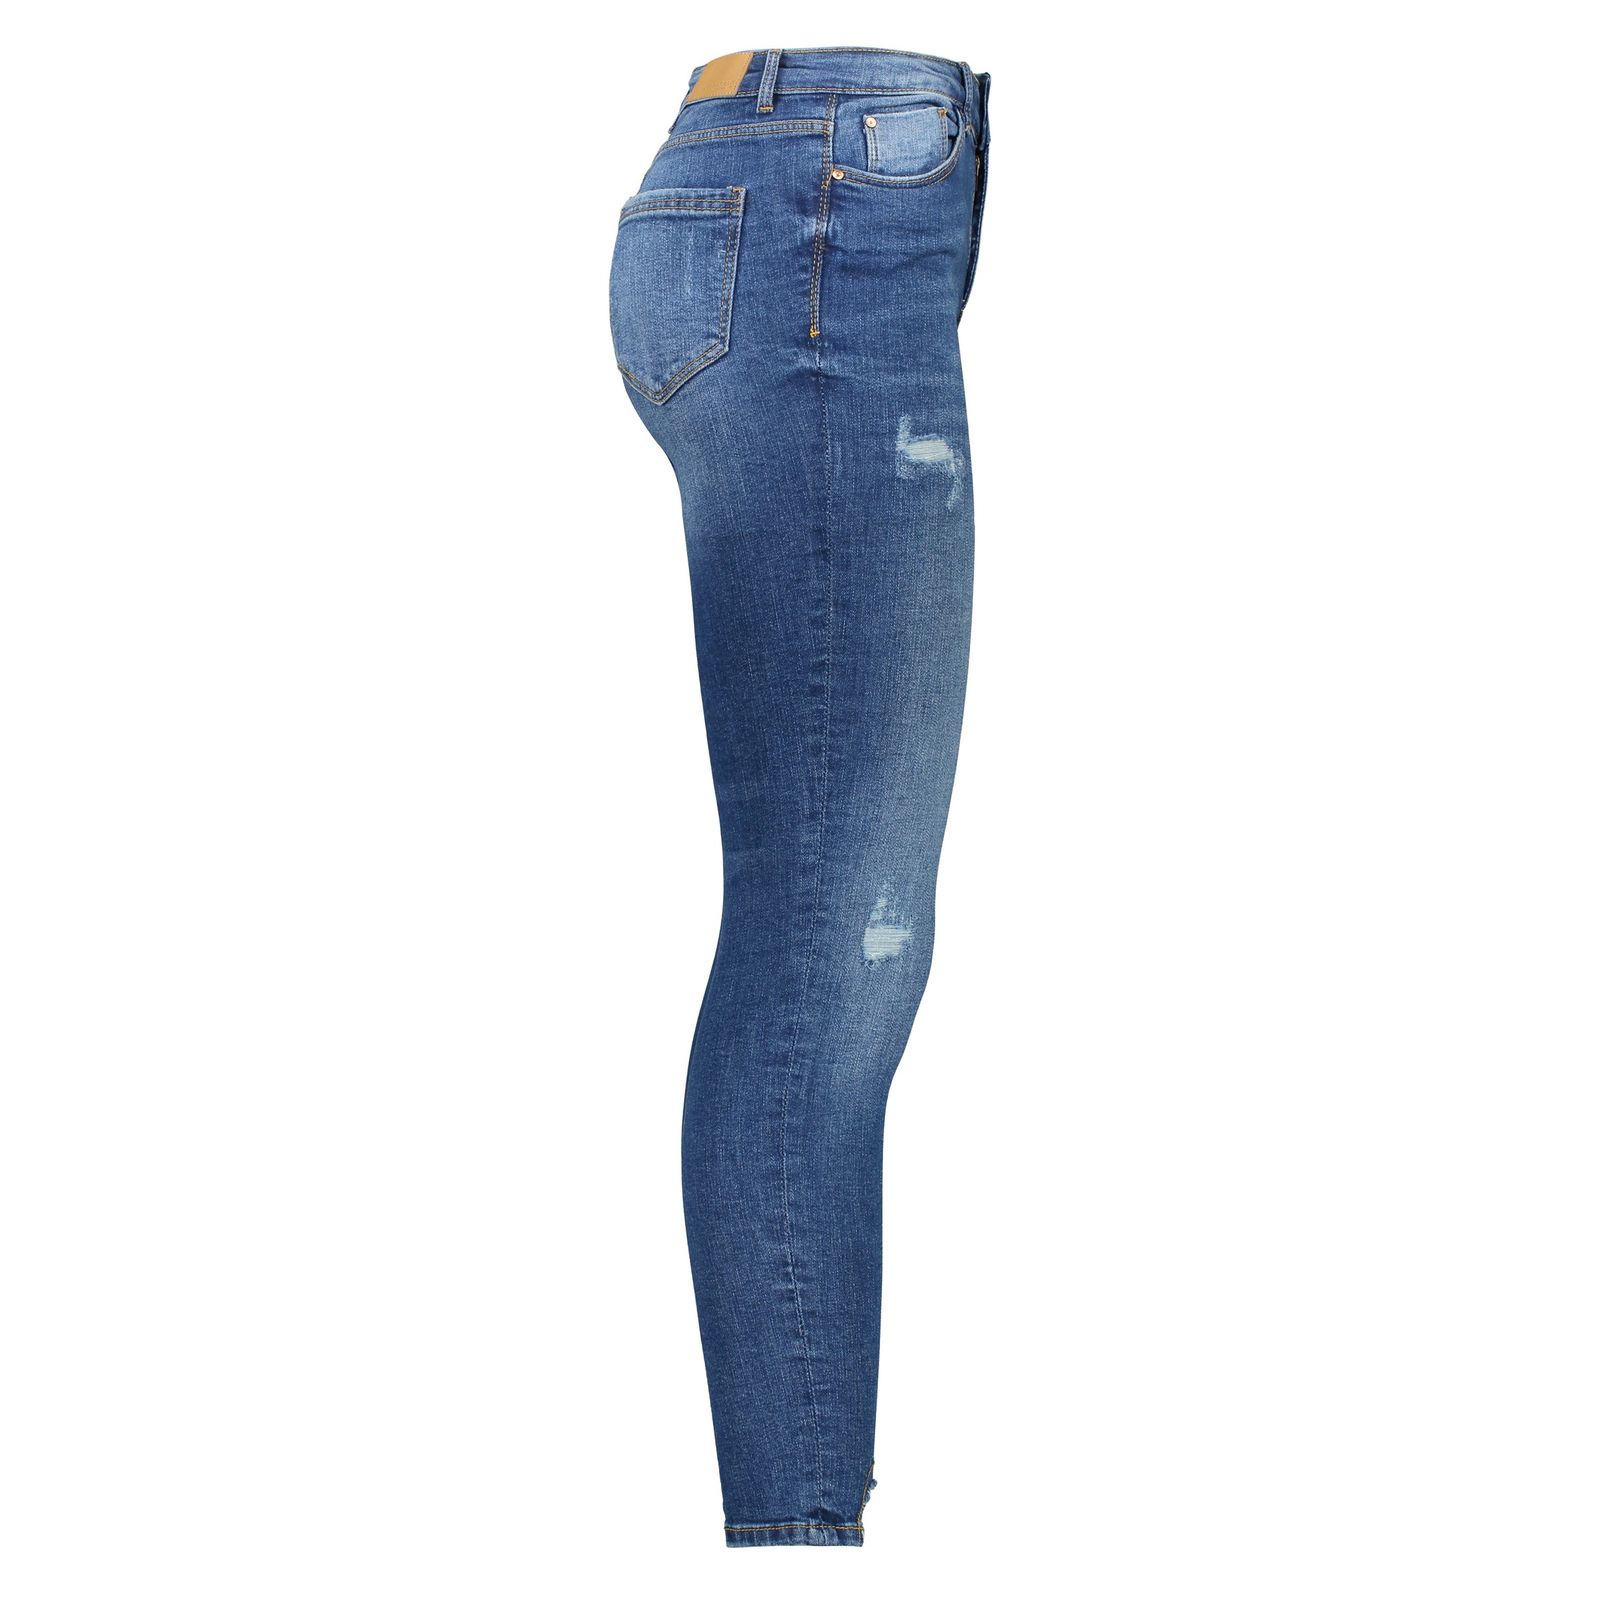 شلوار جین زنانه اسپرینگ فیلد مدل 6823513-BLUES - آبی - 3